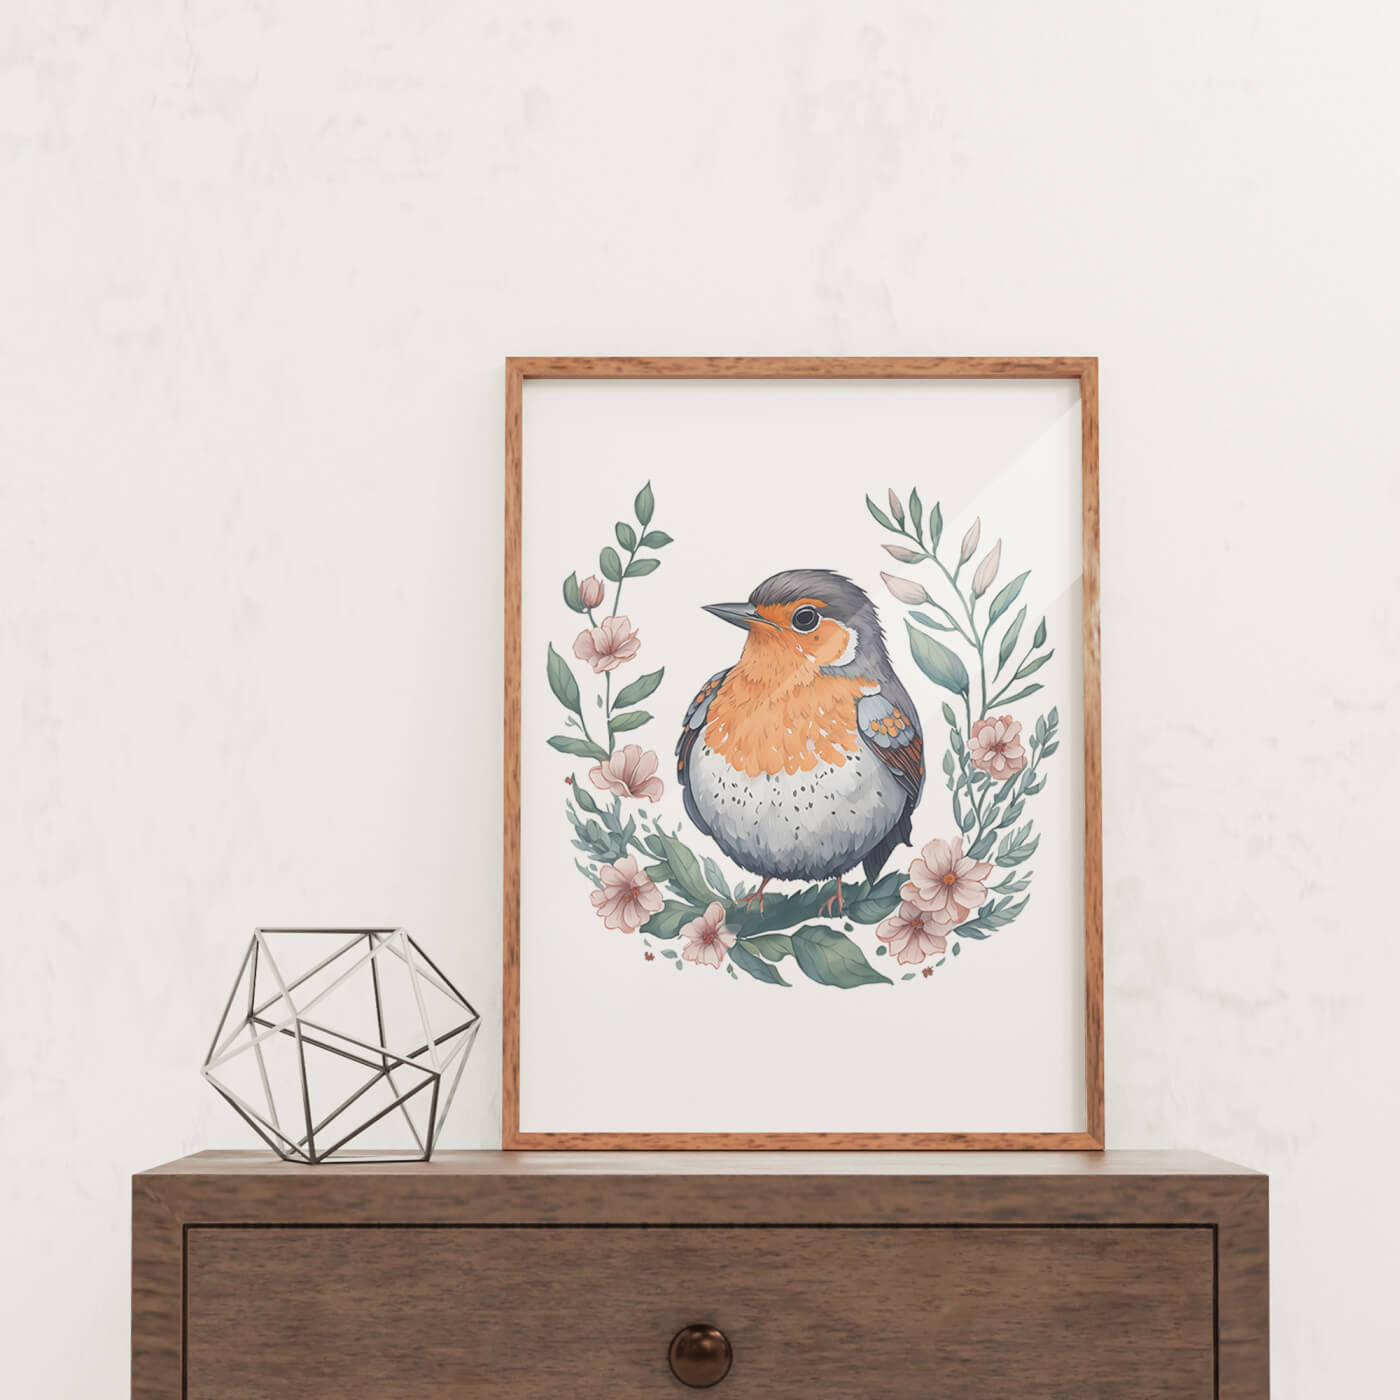 Small Birds Wall Art - Digital Wall Art Set of 3